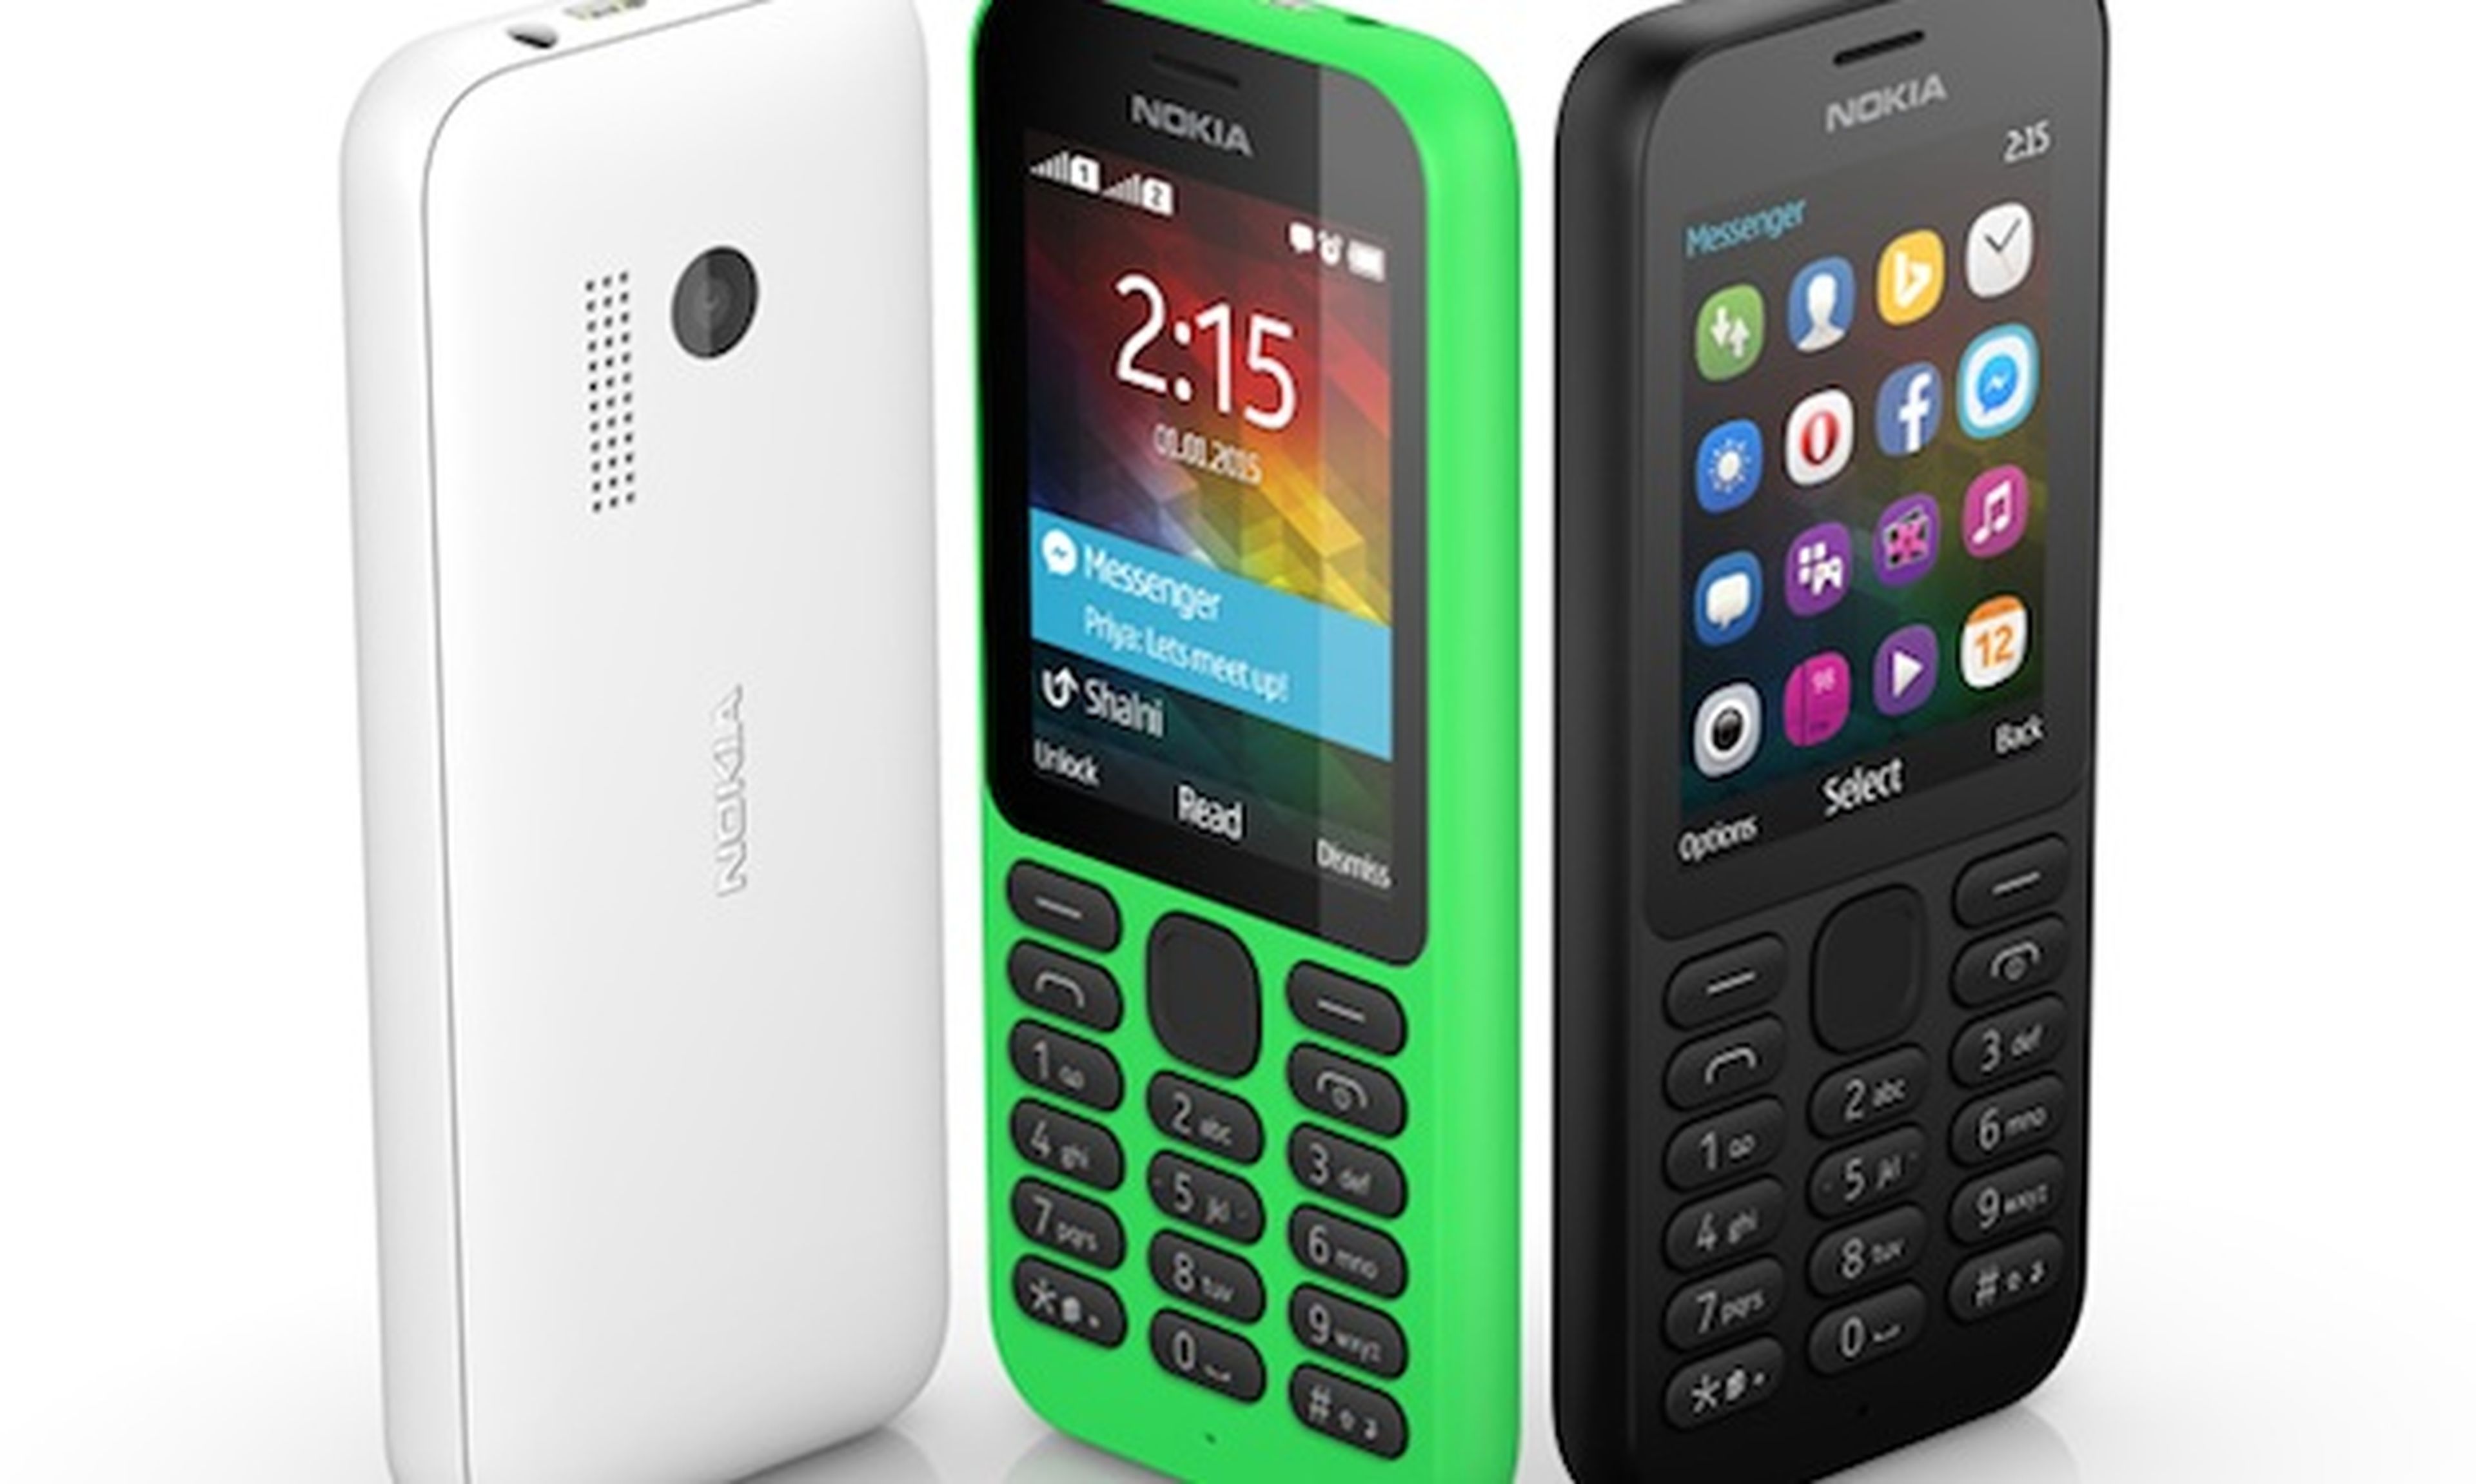 Nokia 215 smartphone 29 dólares